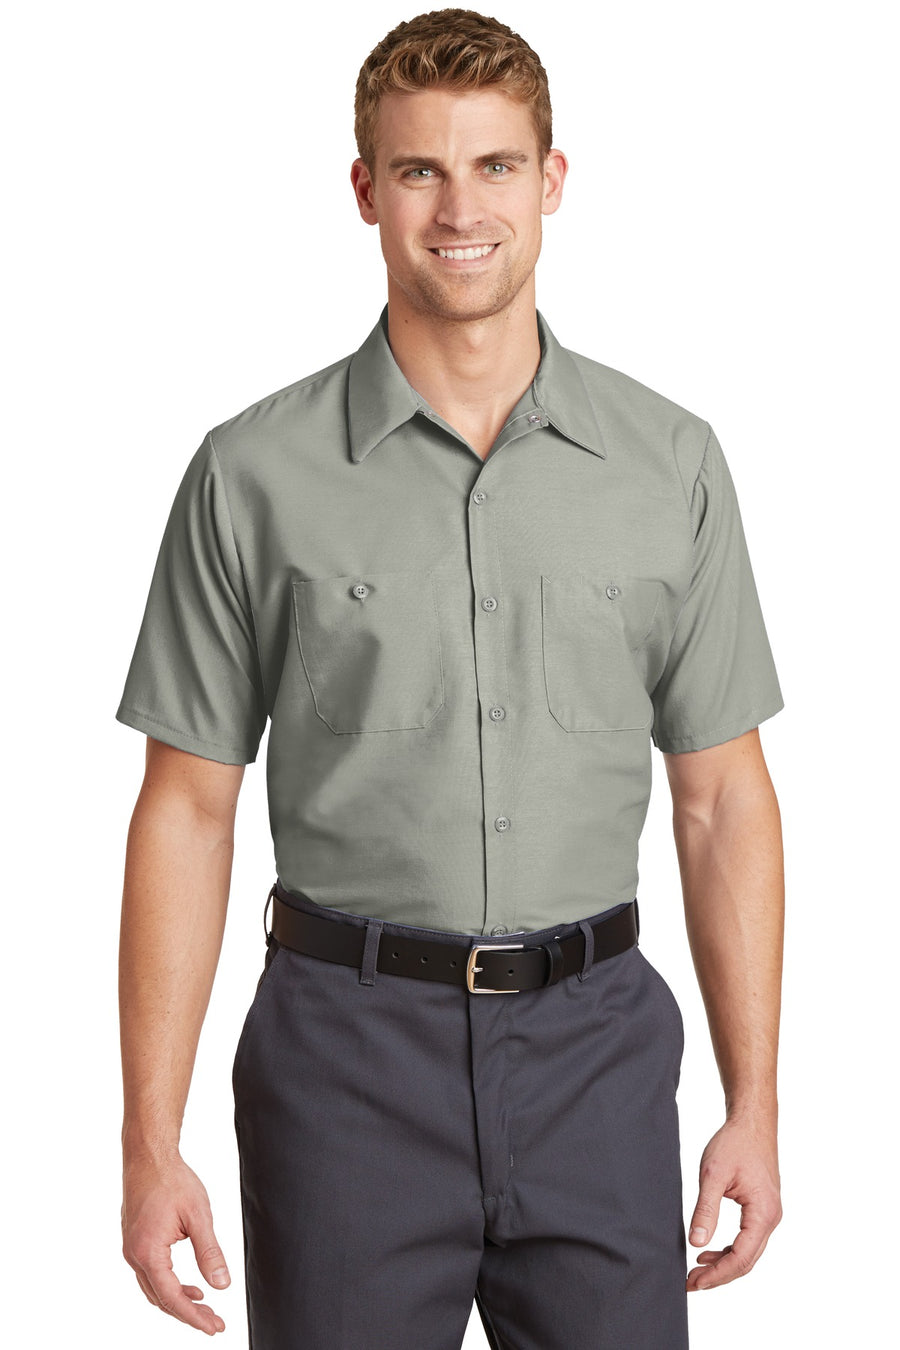 Red Kap Short Sleeve Industrial Work Shirt.